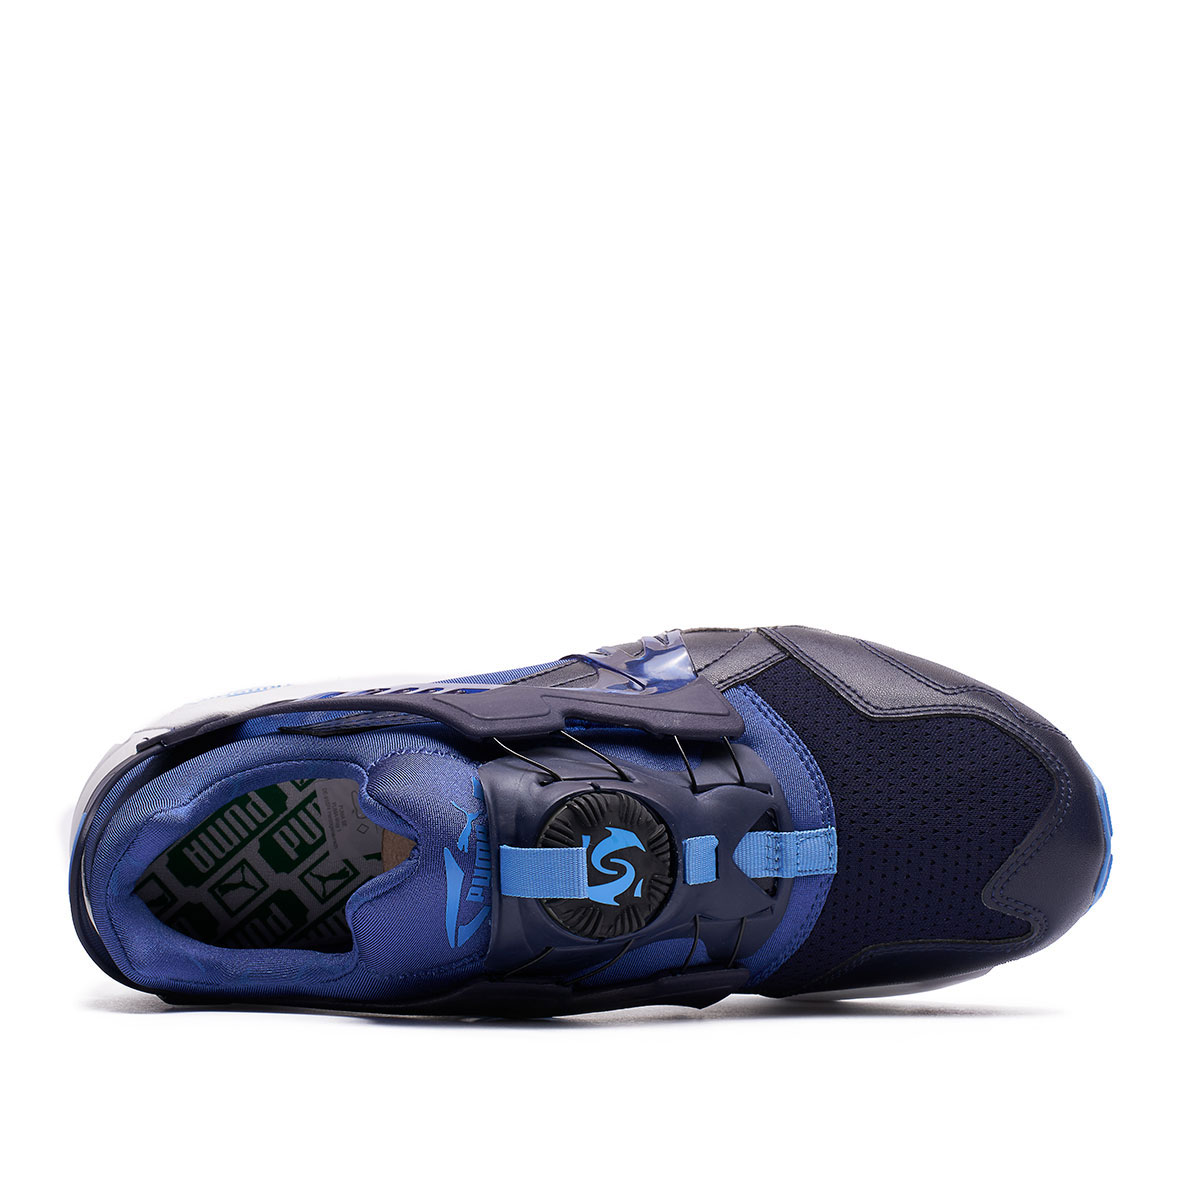 Puma Disc Blaze Updated Core Spec Мъжки спортни обувки 359516-02